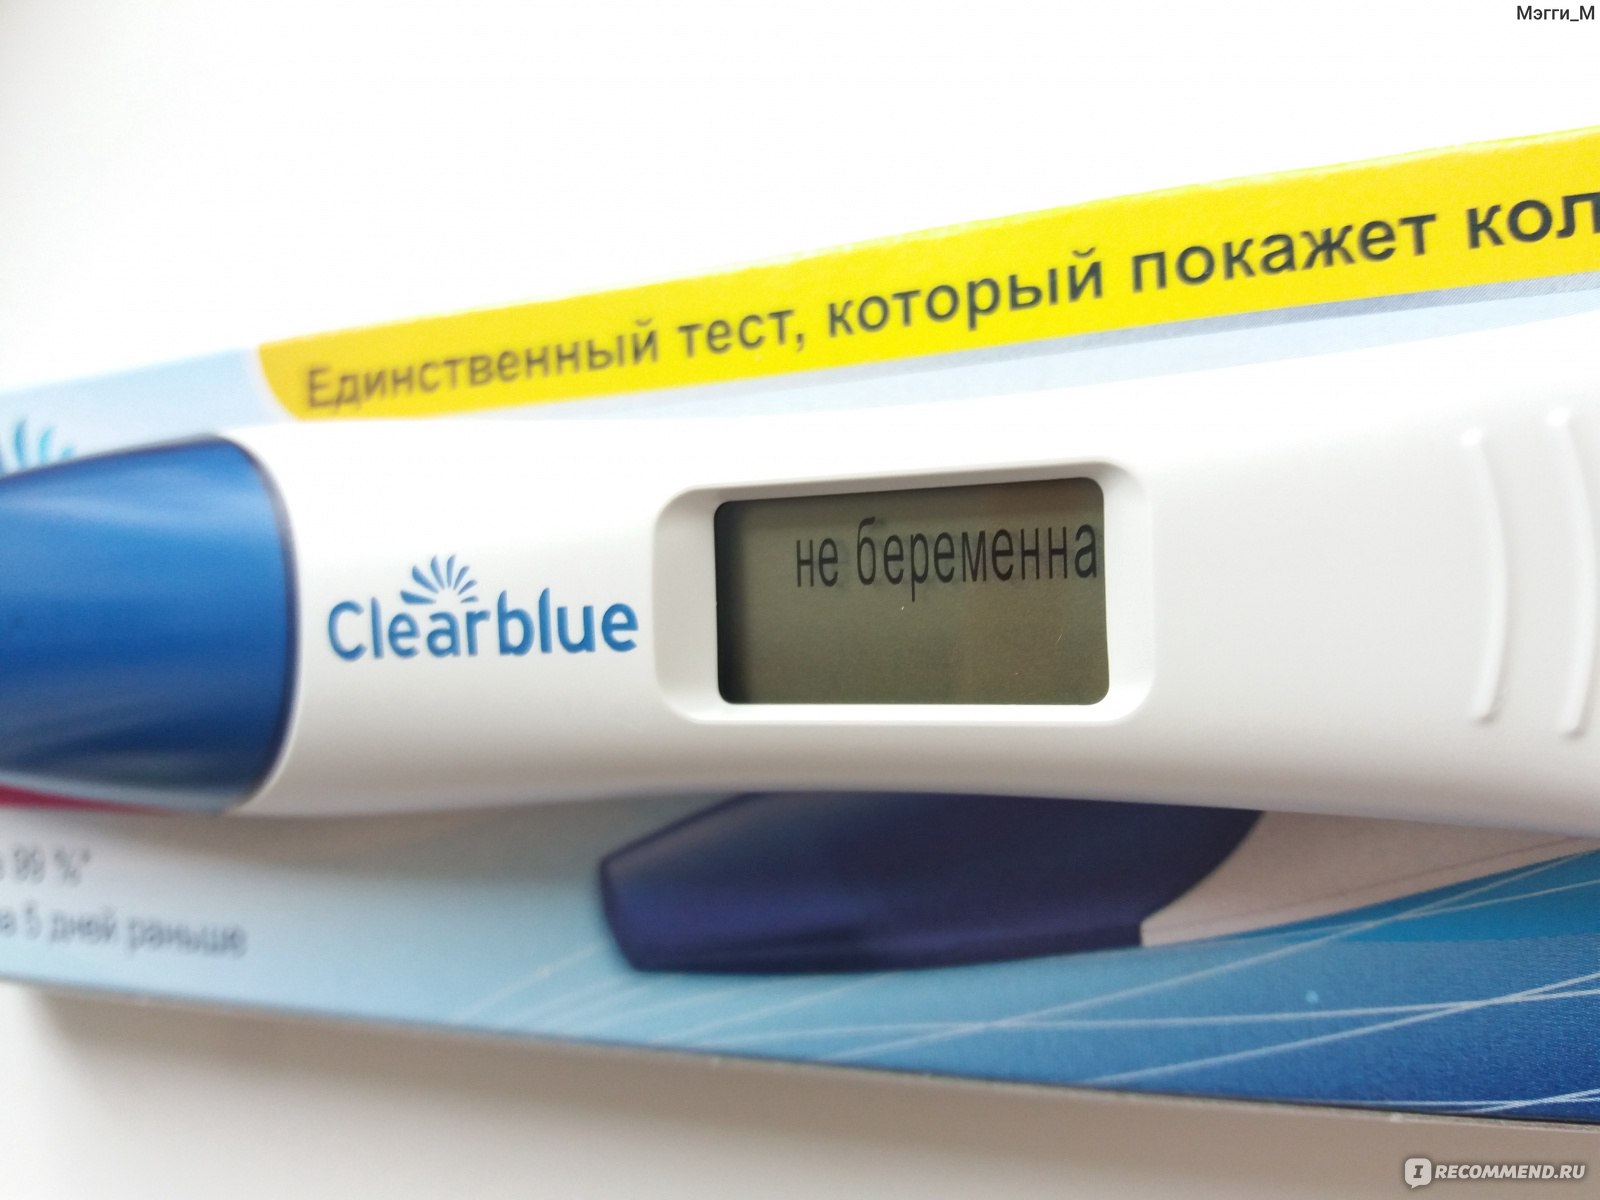 Цифровой электронный тест. Clearblue цифровой тест не беременна. Тест на беременность с цифровым индикатором. Clearblue цифровой тест на беременность на 10 день после овуляции.